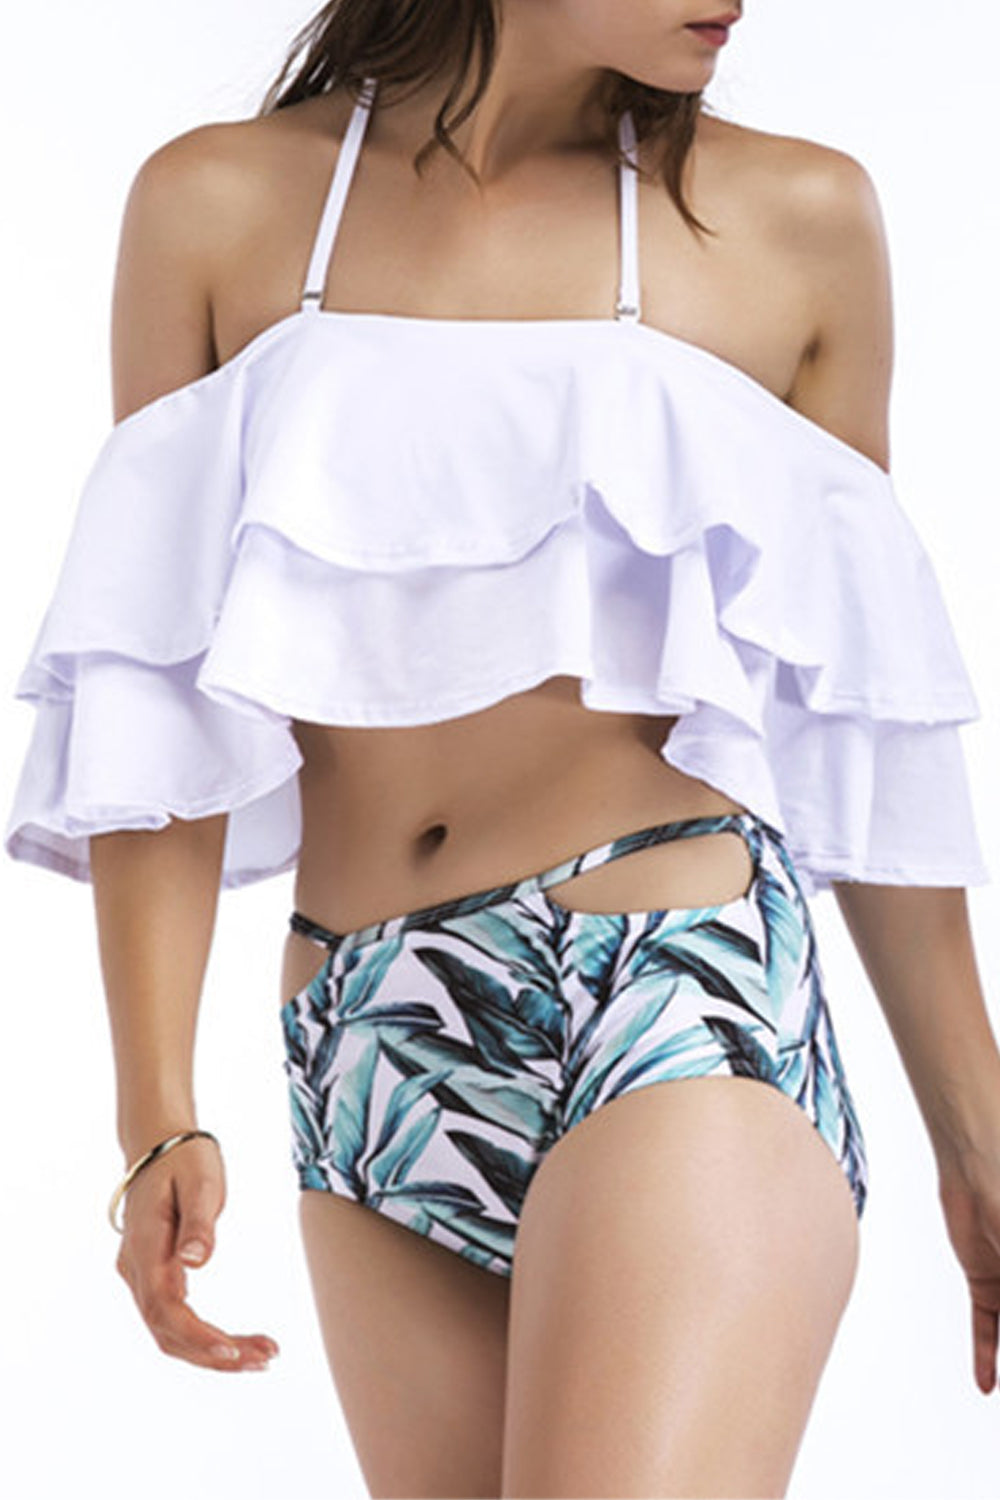 Iyasson Solid Falbala Bikini Top with Leaves printing Bottom